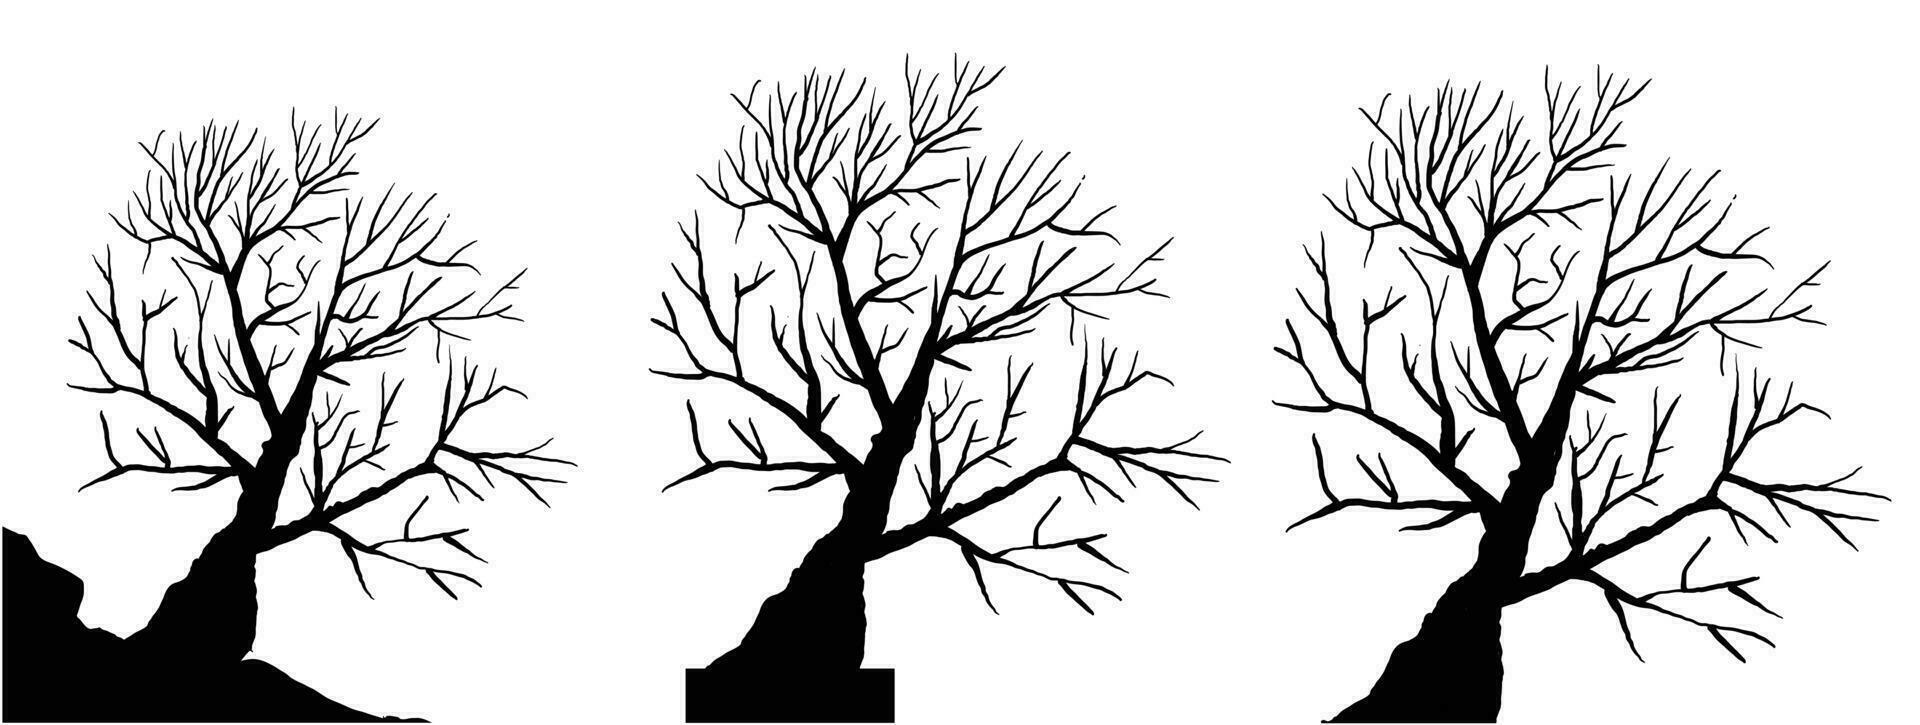 silueta de muerto árbol vector ilustración. silueta de arboles y ramas sin hojas. desnudo árbol silueta. negro rama árbol vector. silueta de un desnudo árbol.